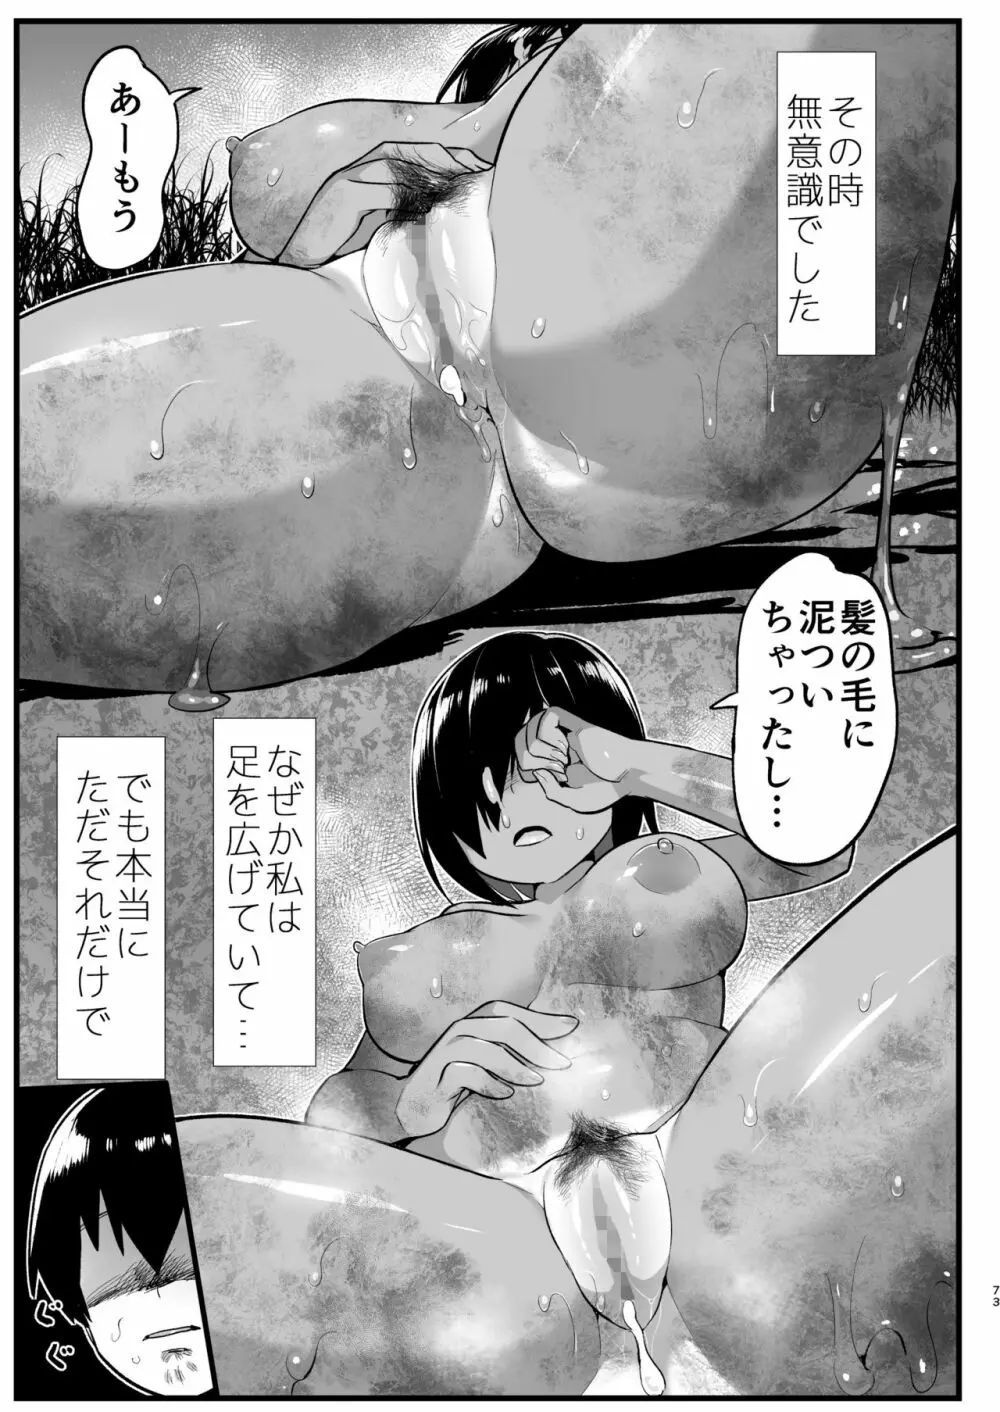 無人島女さん全身泥だらけでパコられる!:吉村さん6話 72ページ